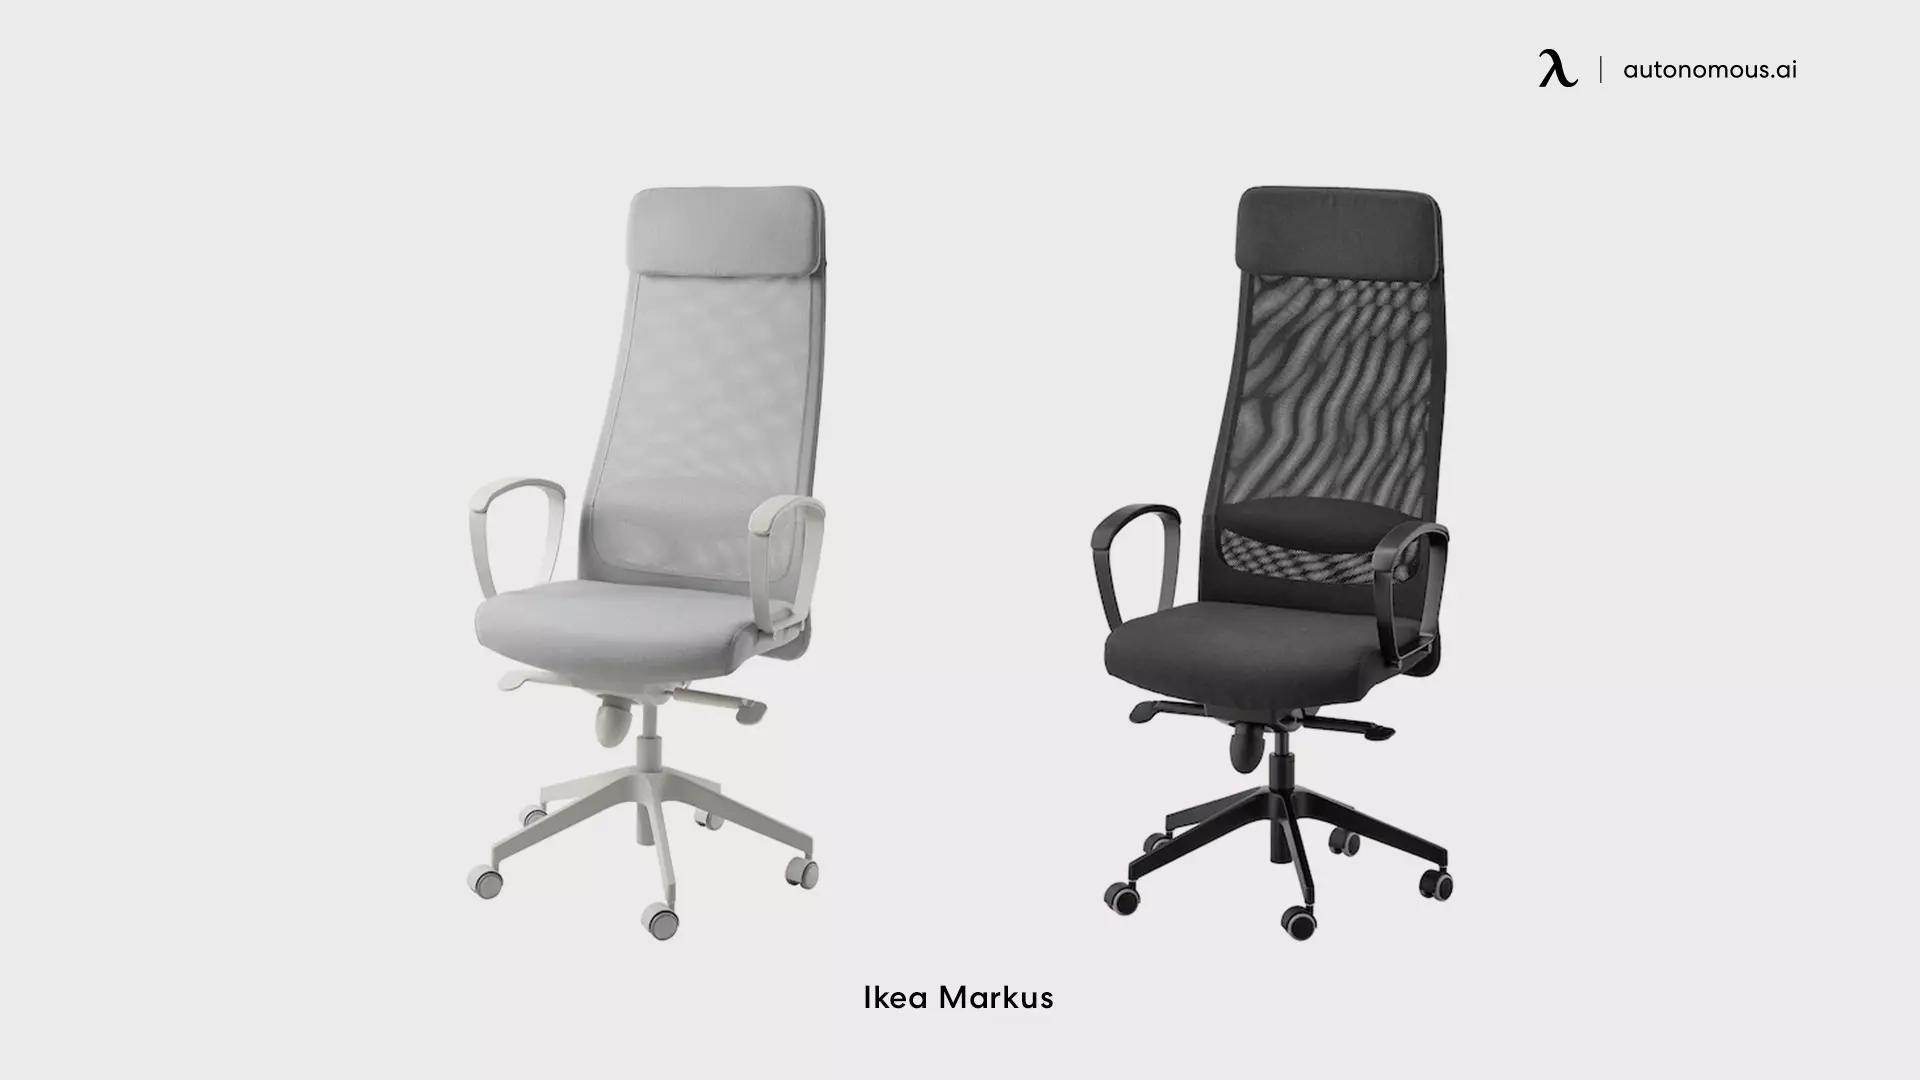 IKEA Markus swivel office chair